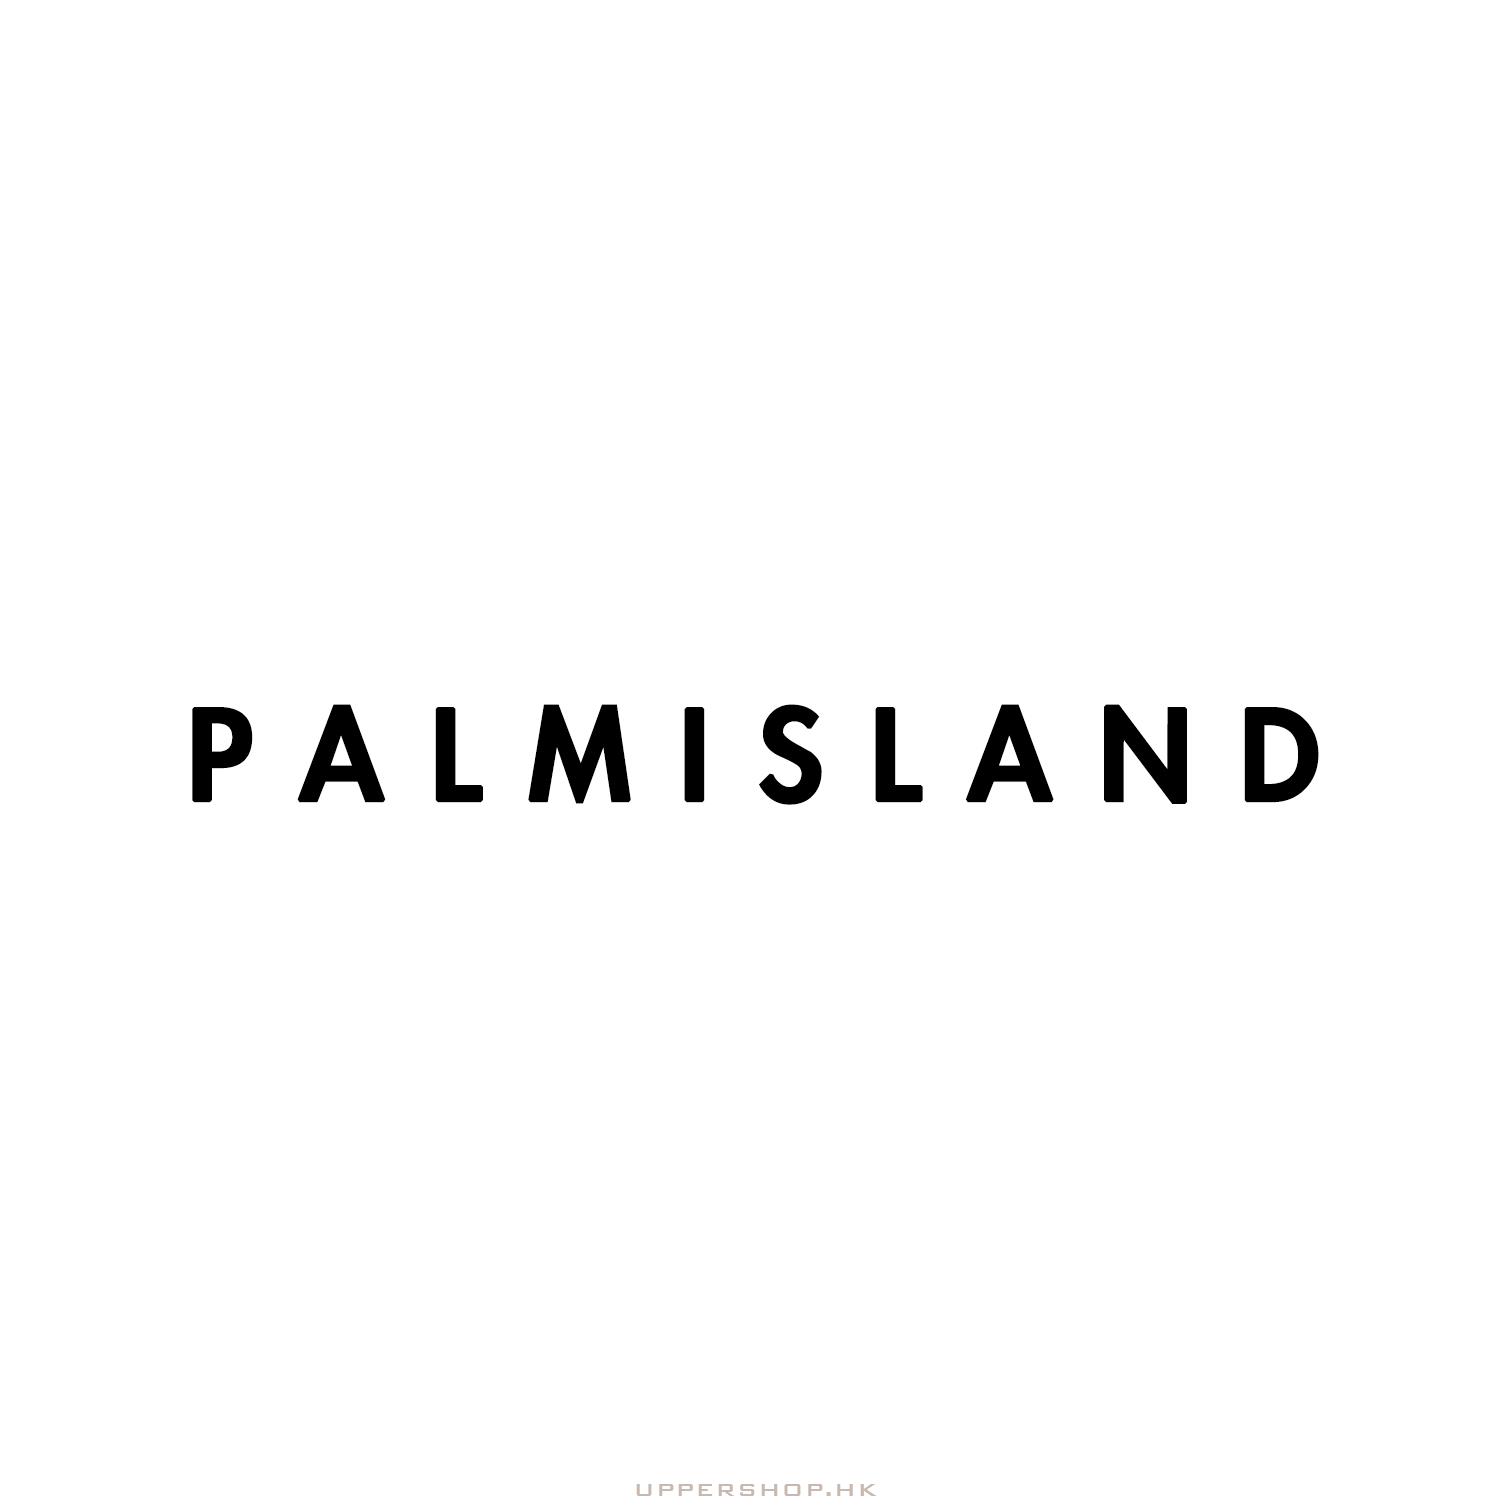 Palmisland clothing